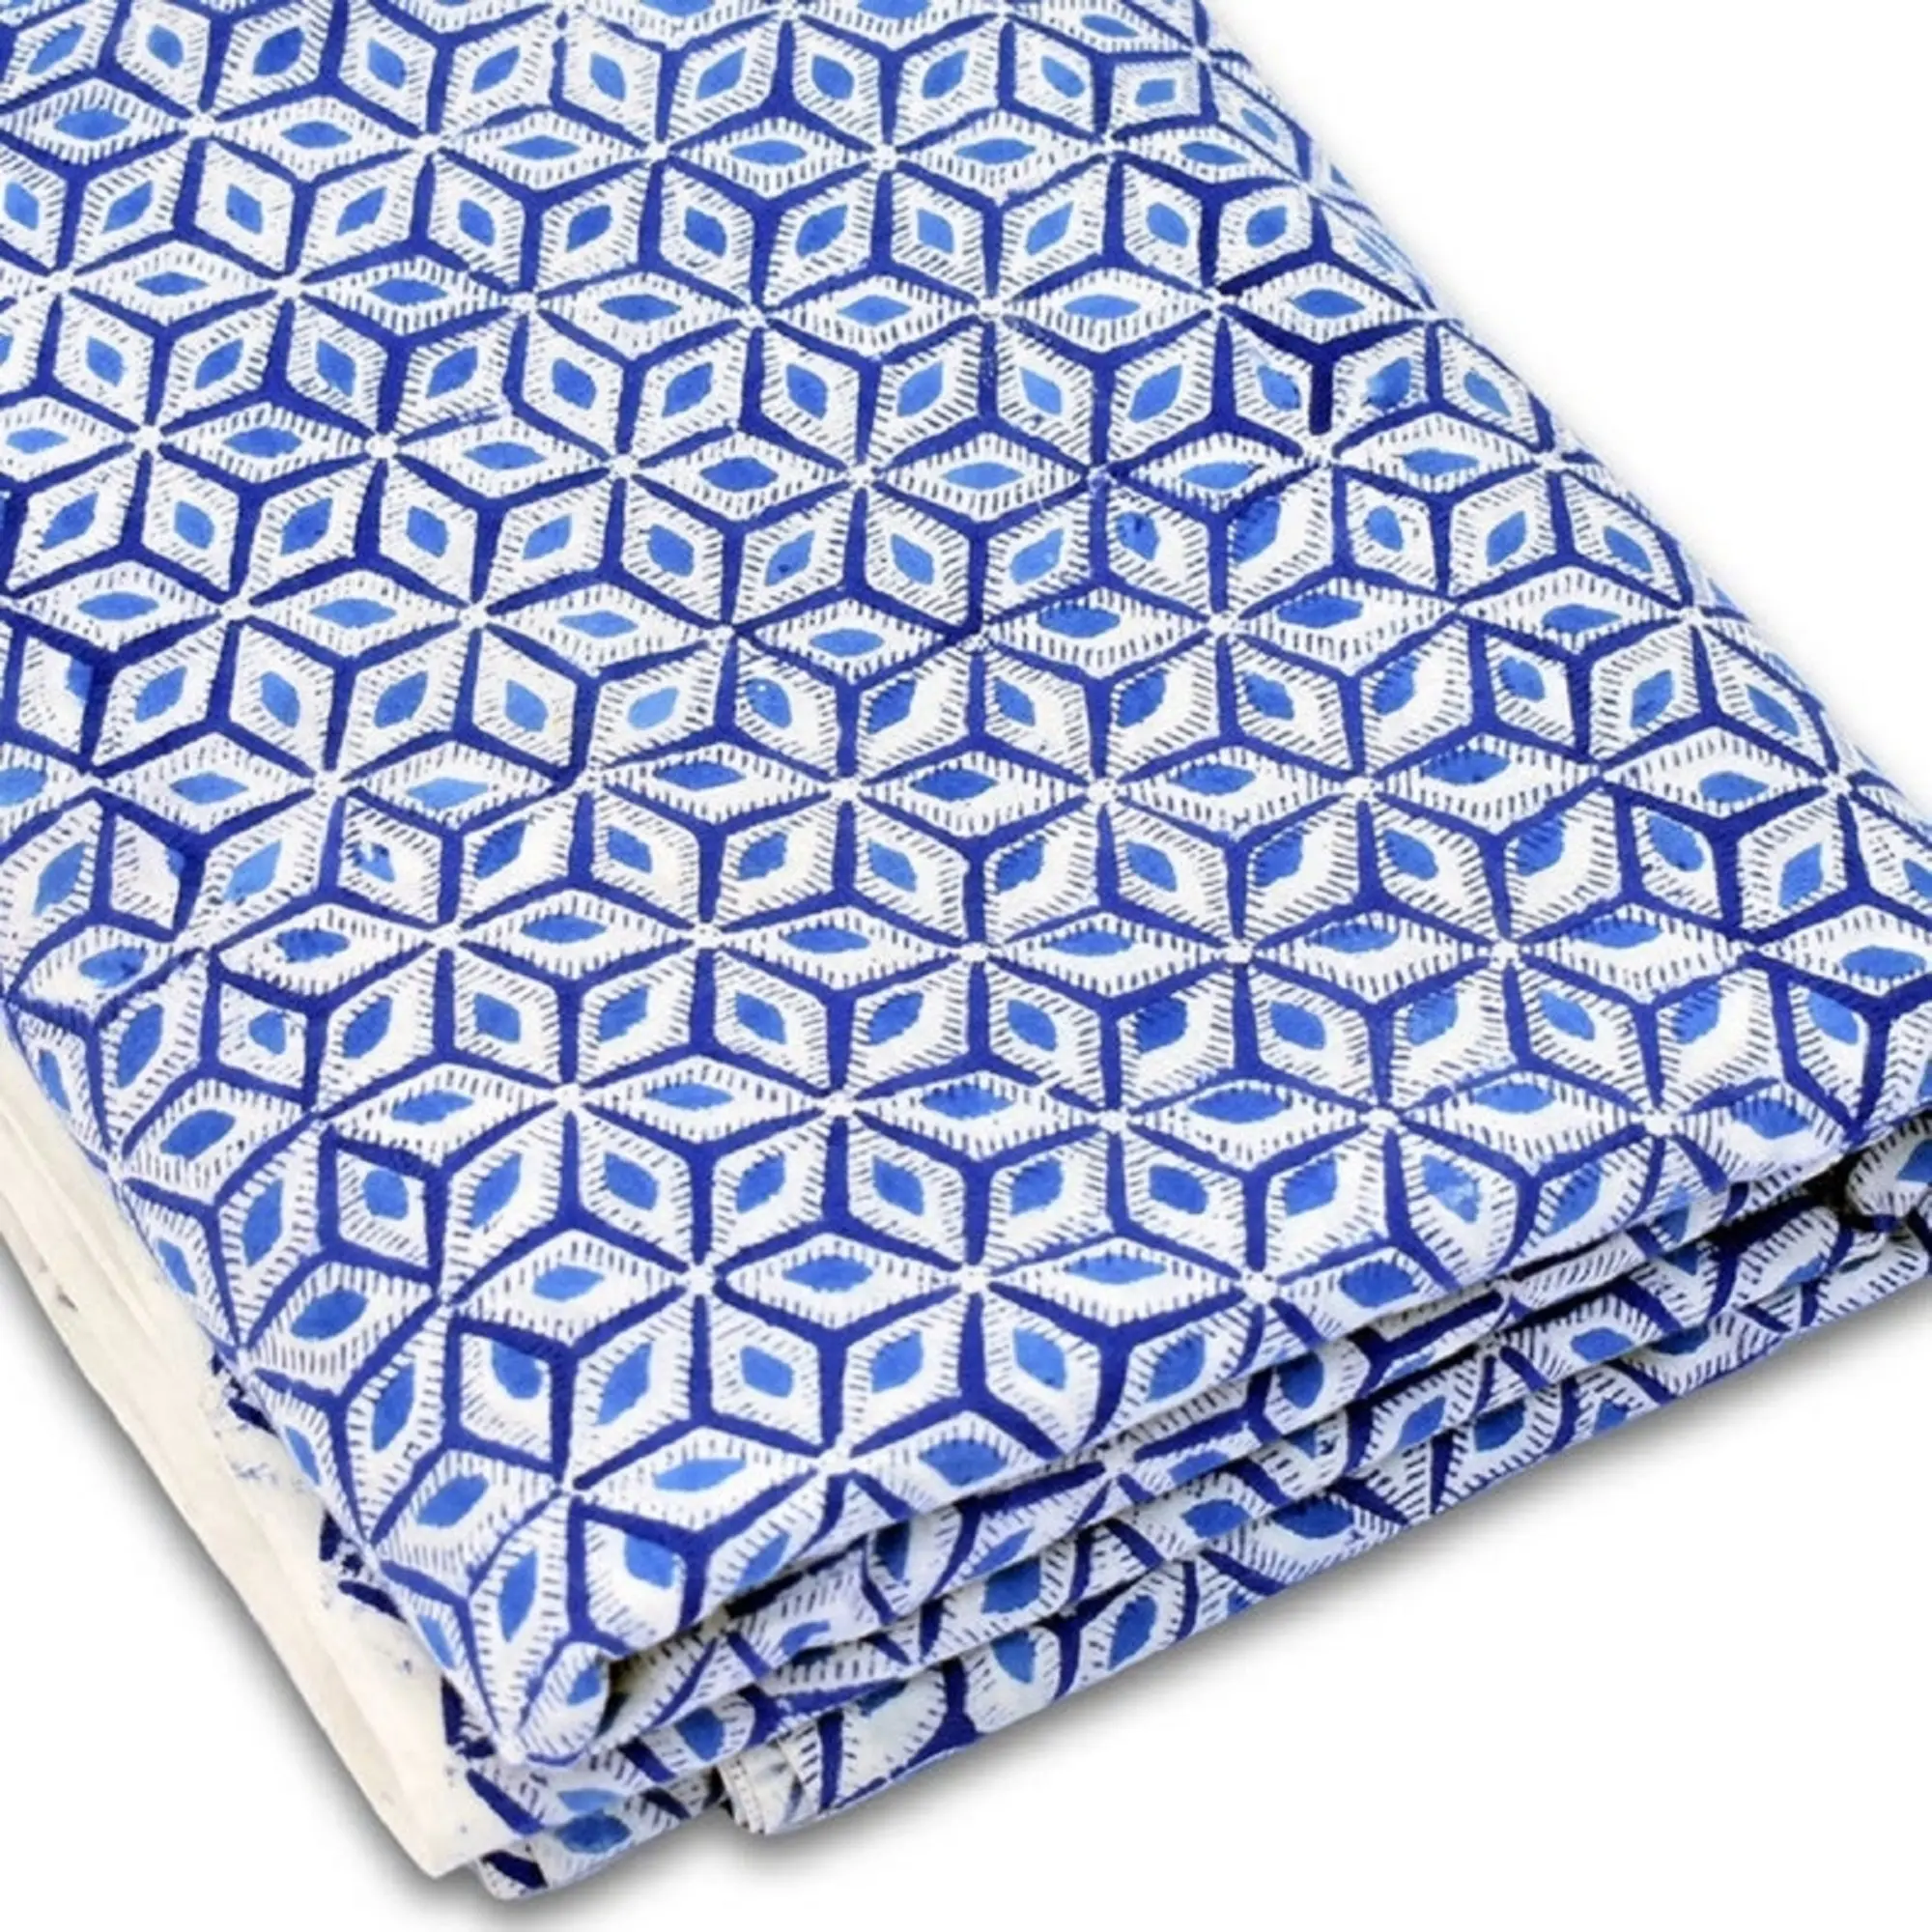 Color azul geométrico impreso hecho a mano bloque impreso telas 100% algodón orgánico Vintage costura tela prendas hacer vestidos